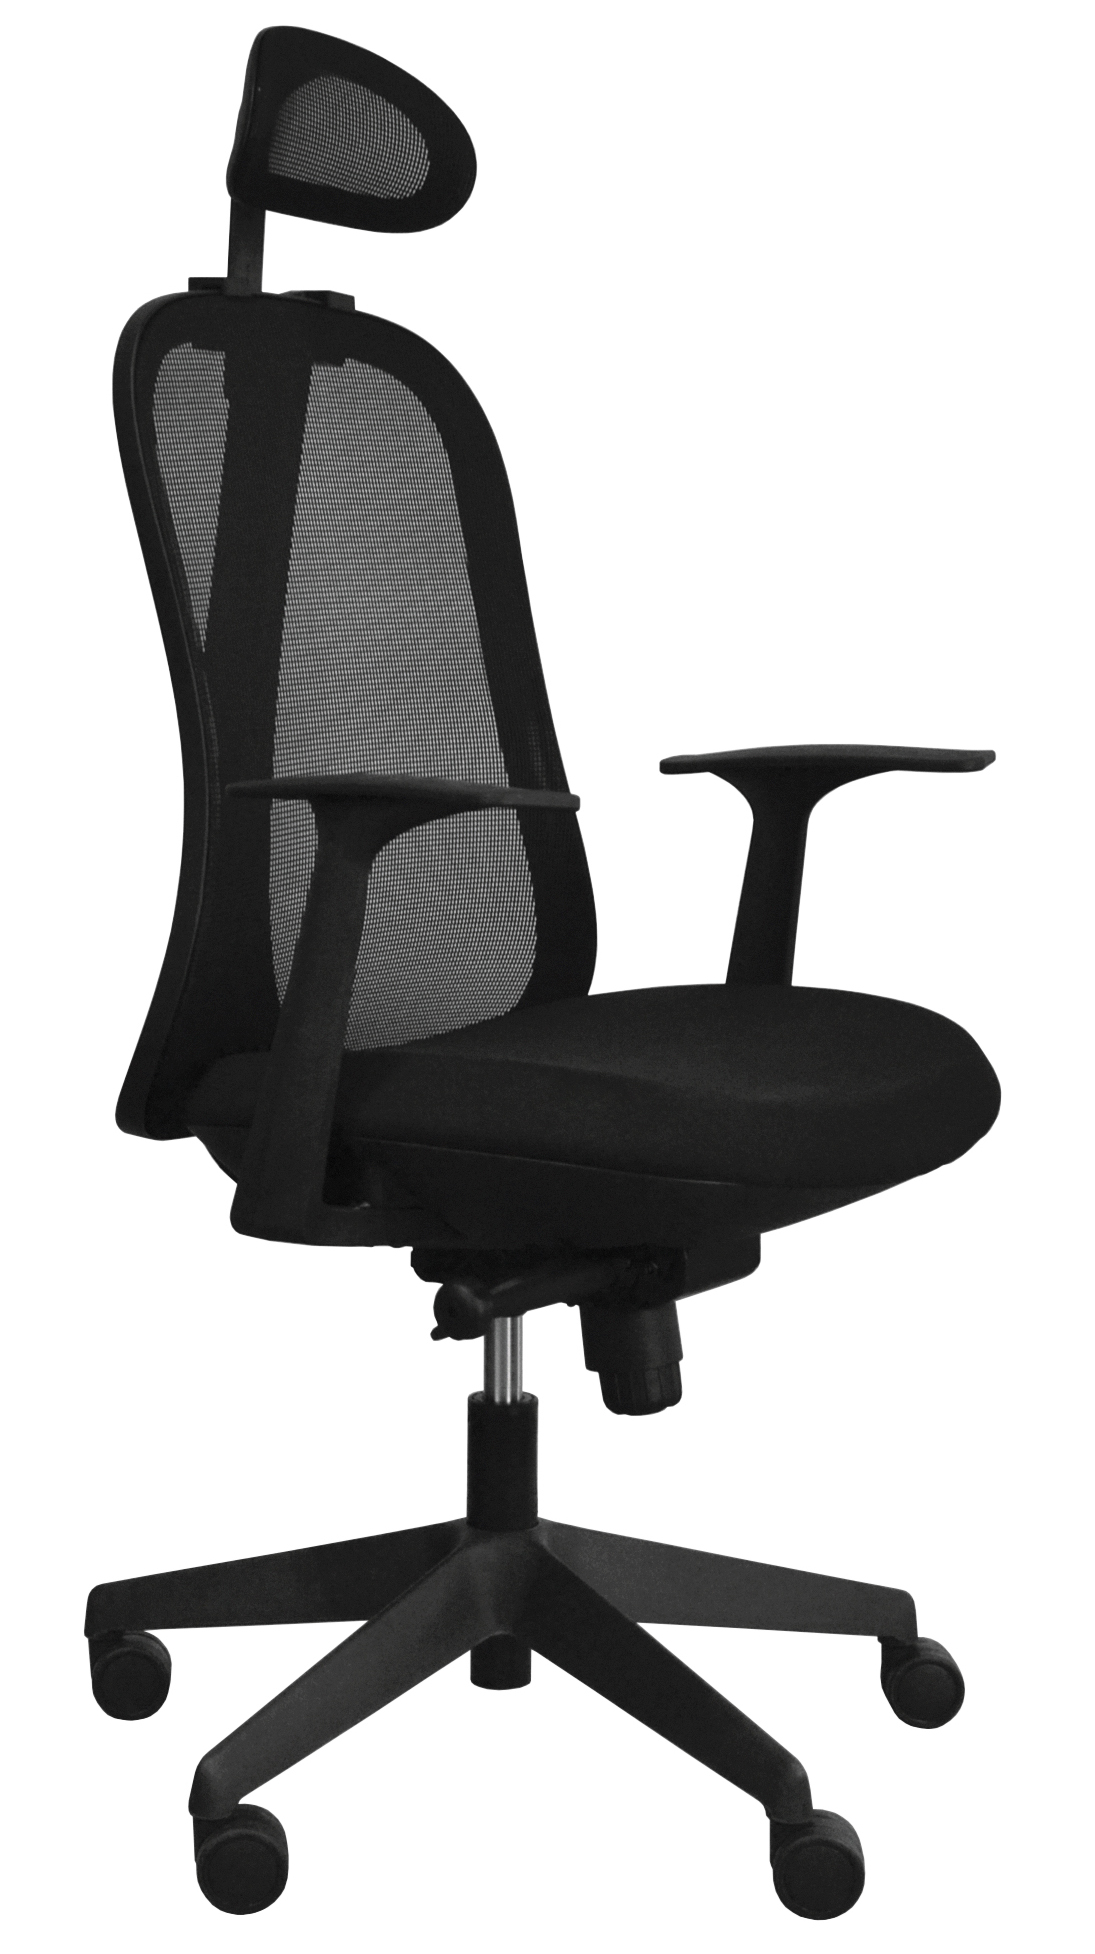 Kancelářská židle Libra High B - Černý plast